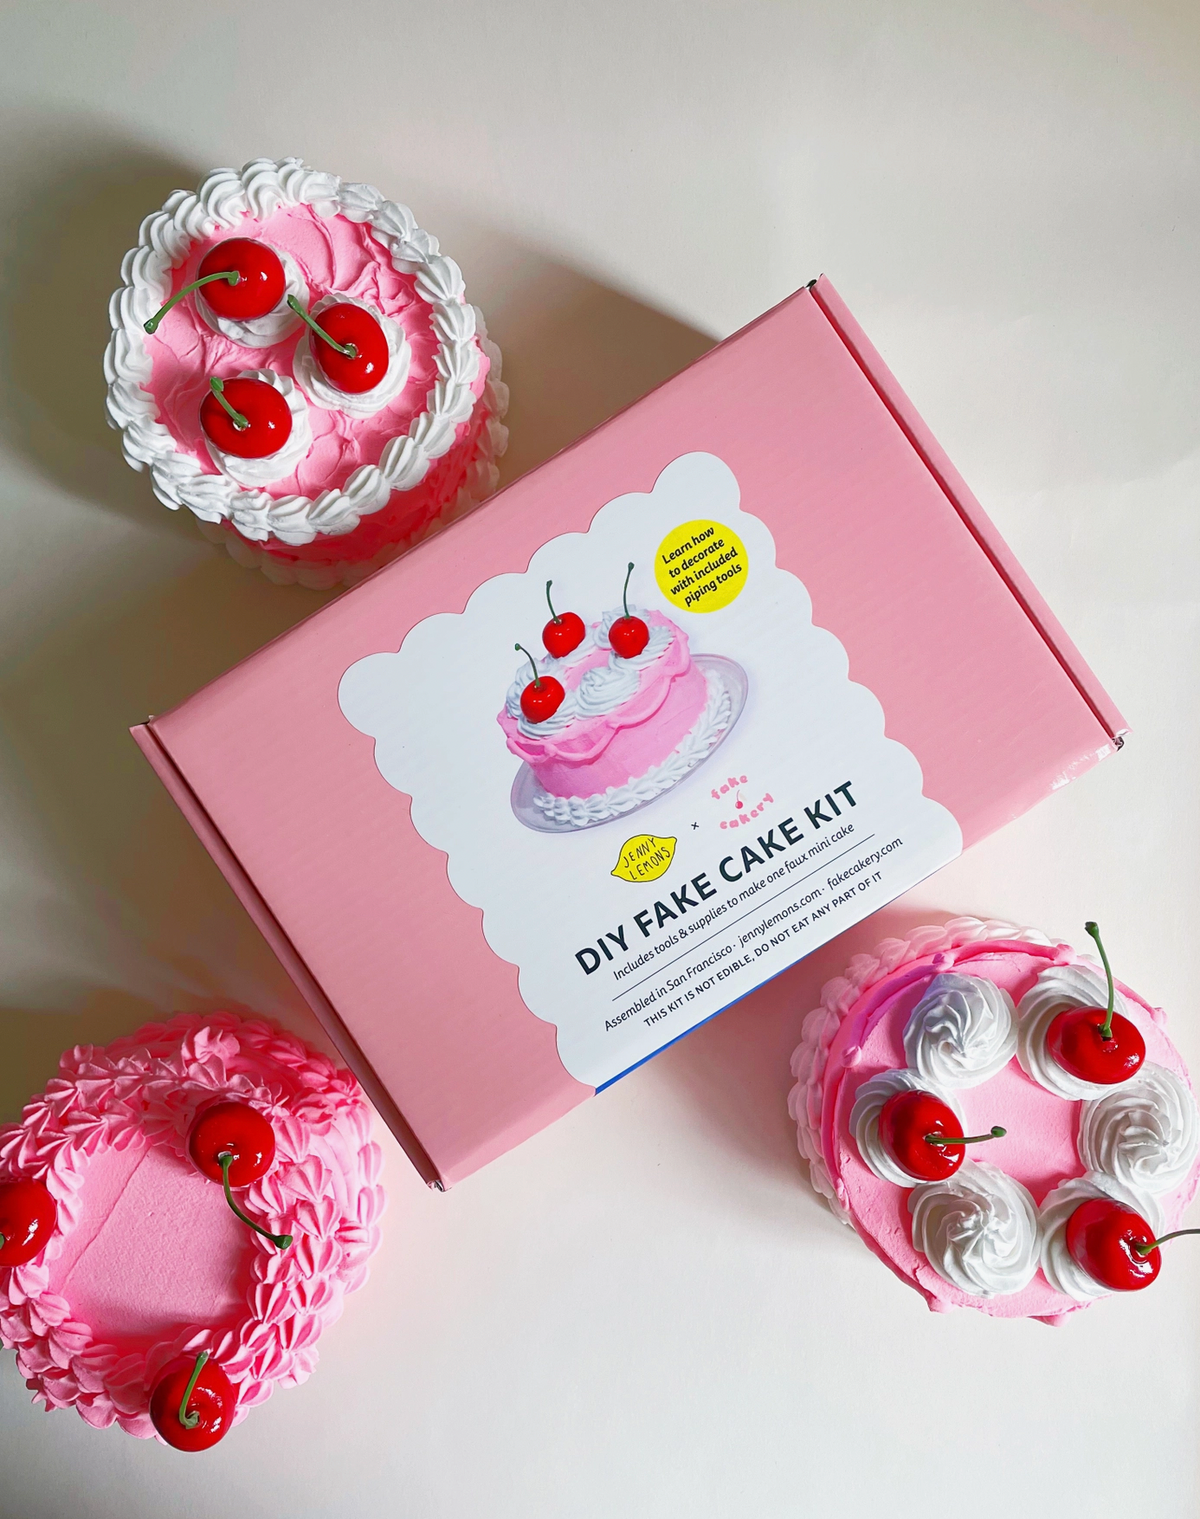 DIY Pink Cherry Fake Cake Kit